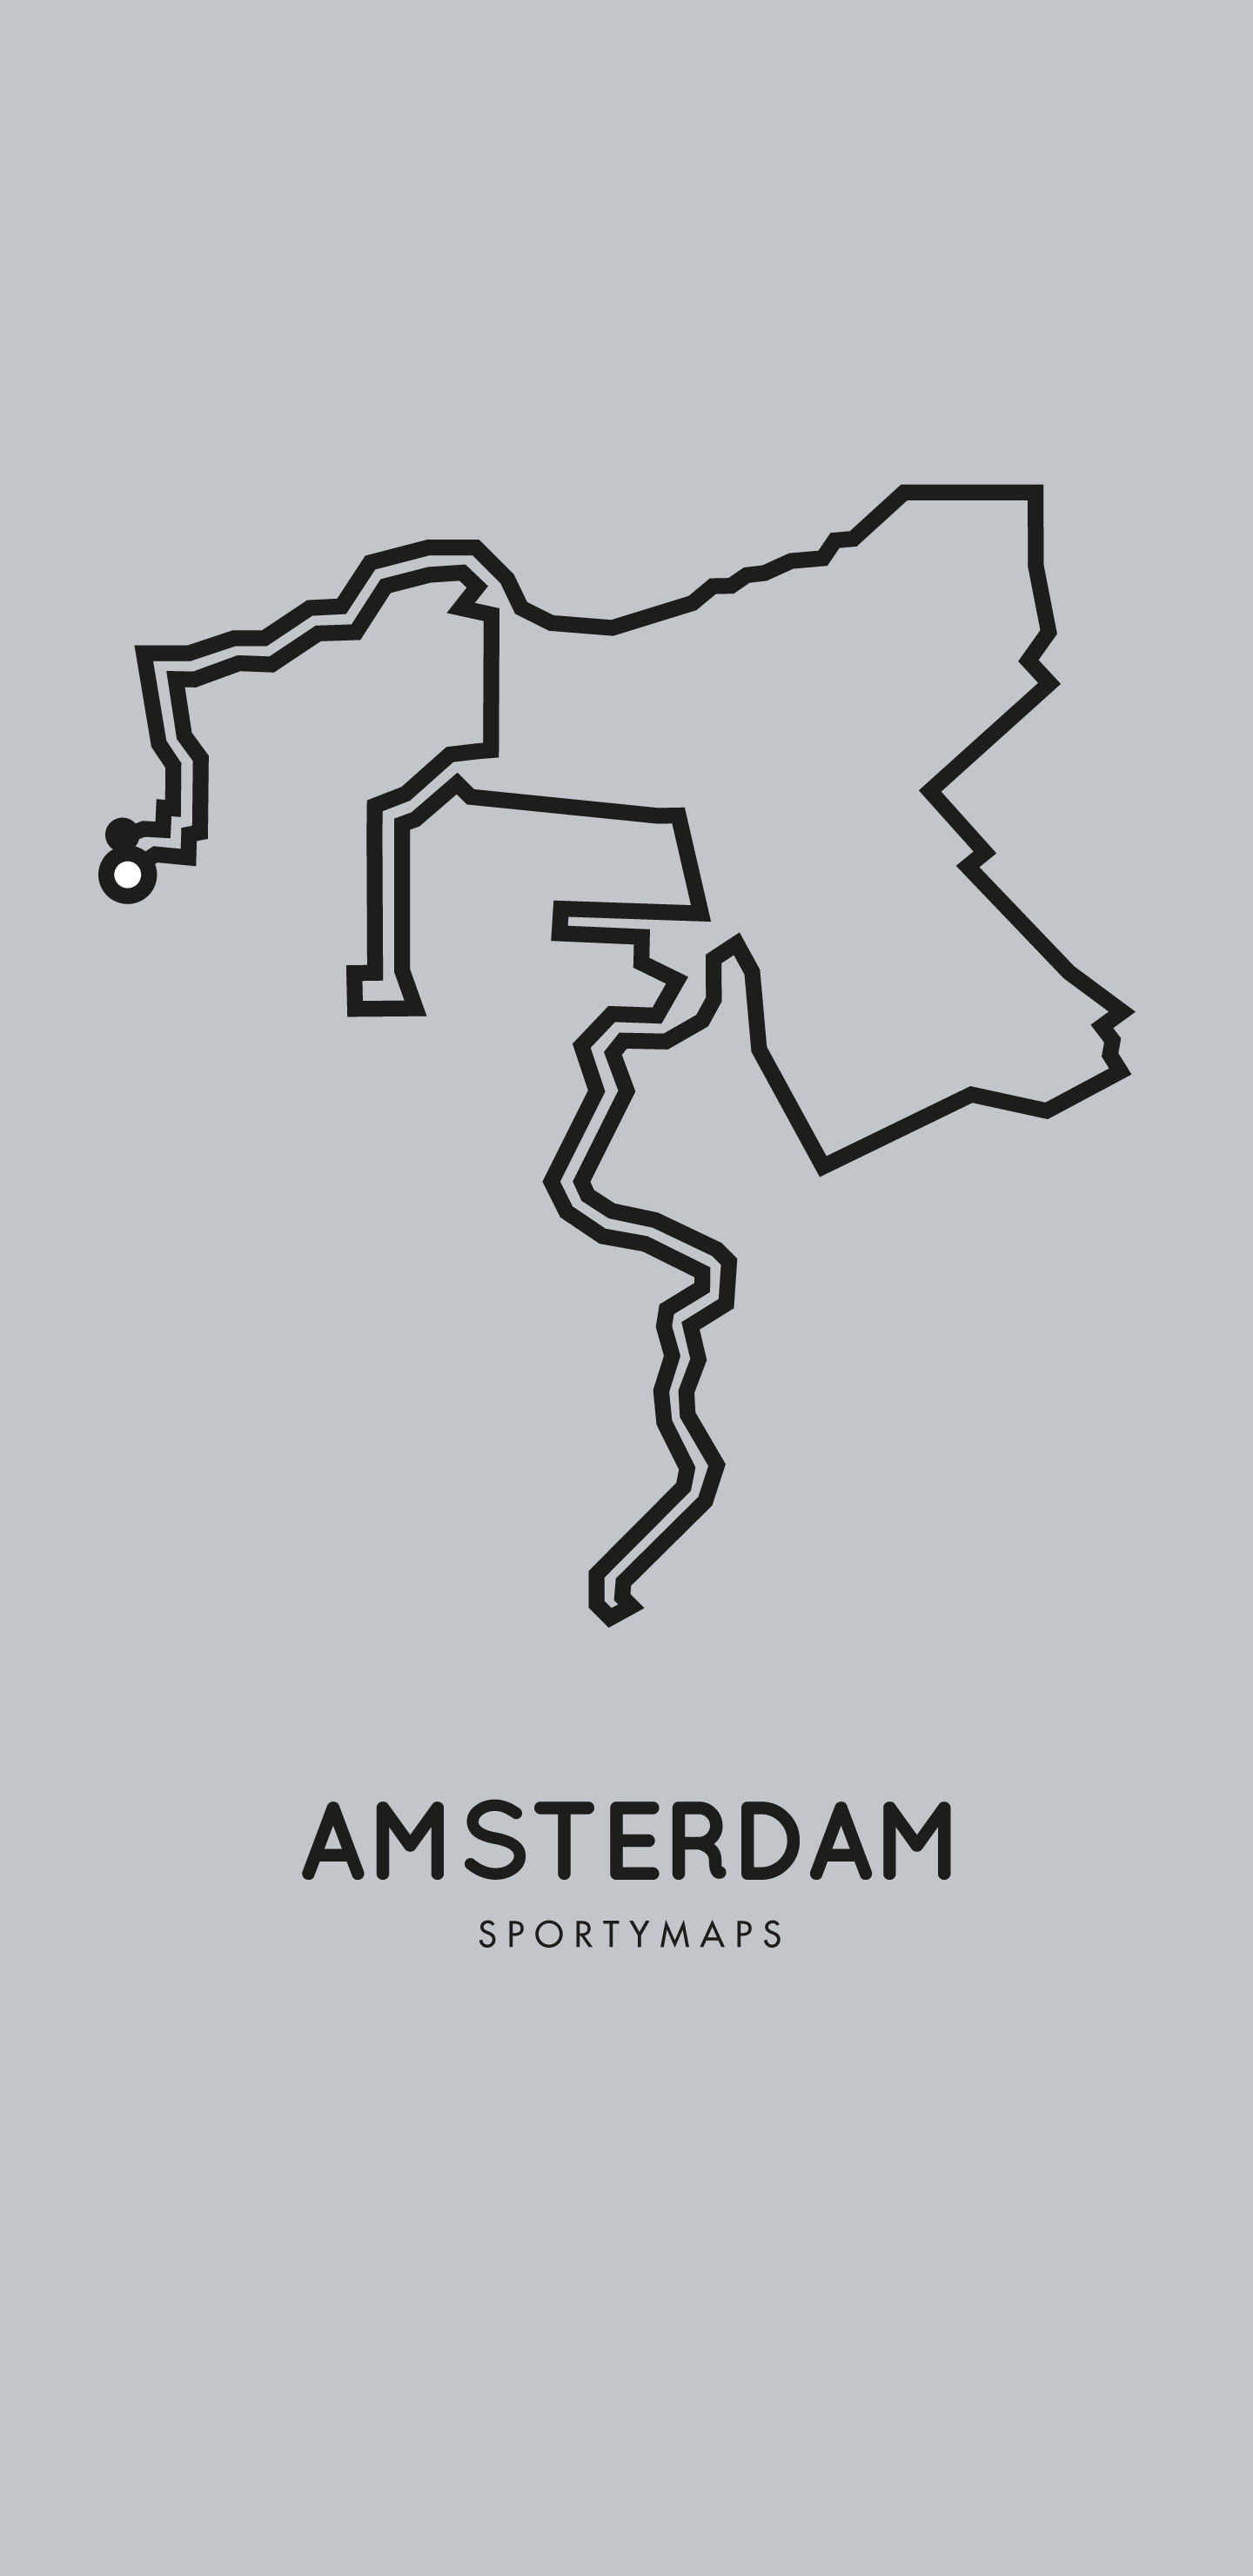 Sportymaps-Amsterdam-marathon-gray